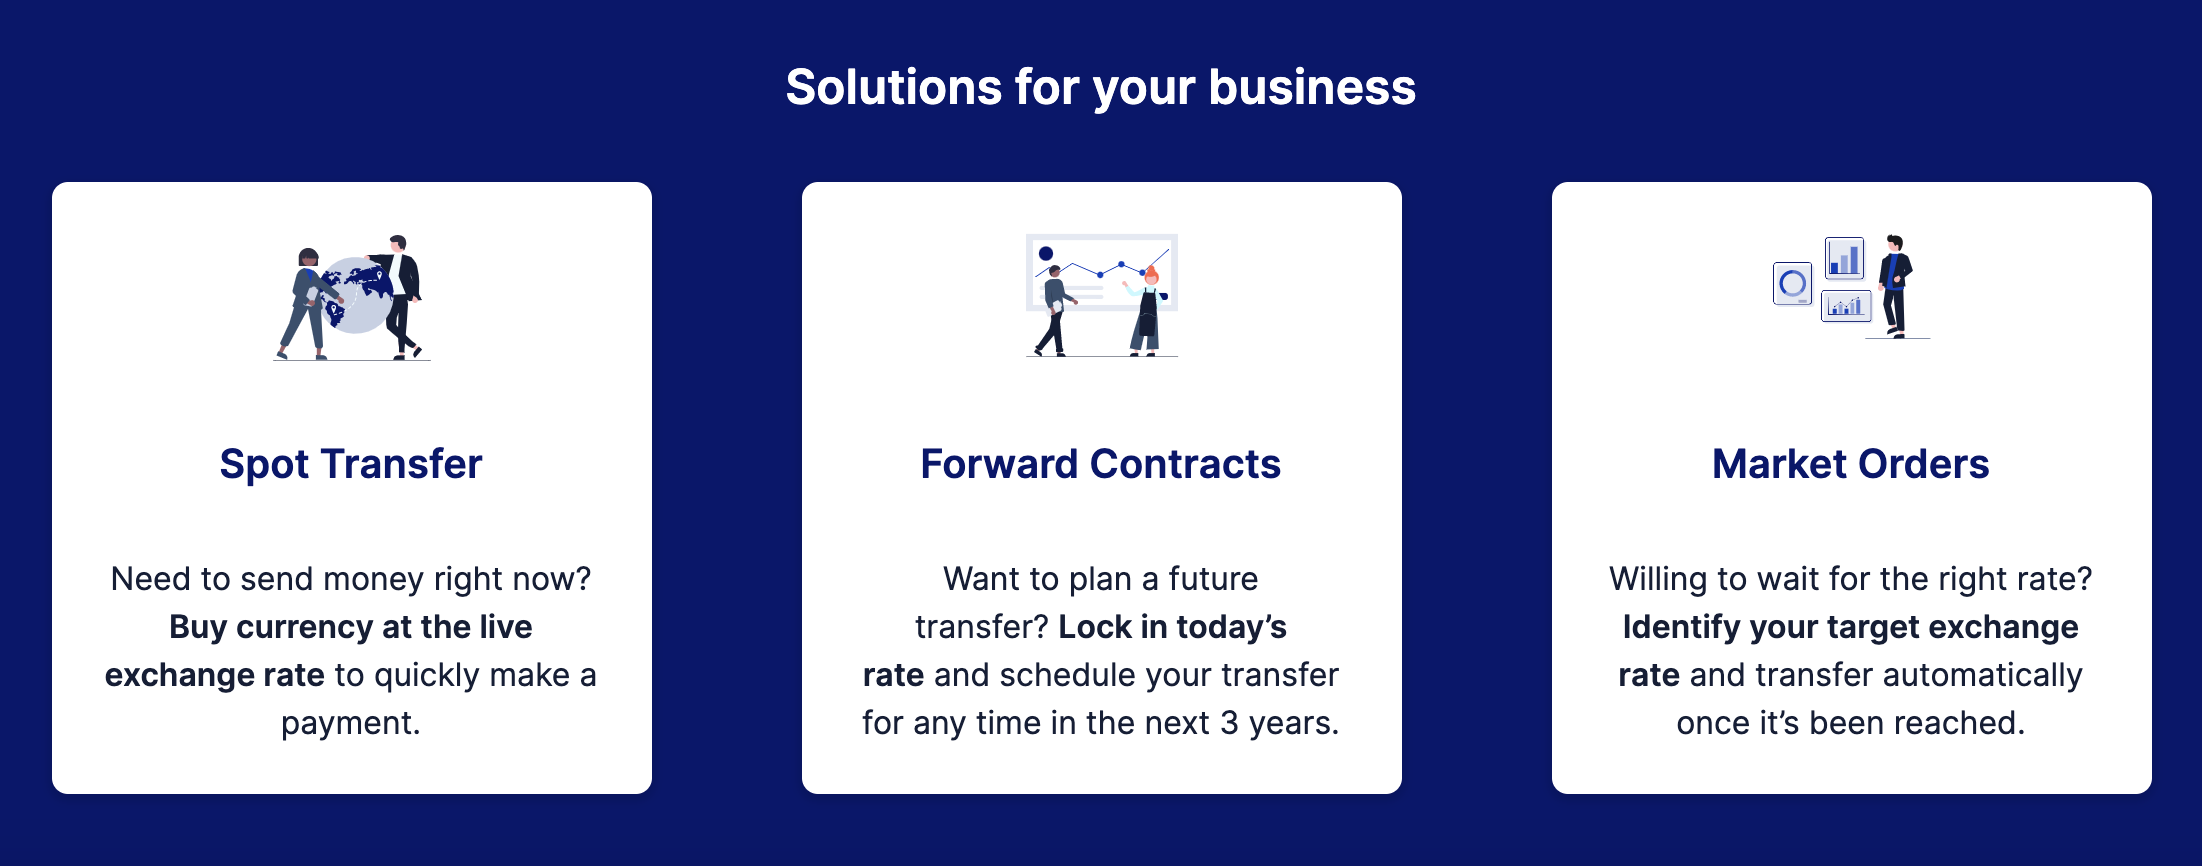 Imagen que describe los contratos al contado, para transferencias inmediatas; los contratos a plazo, para planificar transferencias futuras; y las órdenes de mercado, que esperan hasta que un tipo de cambio es el adecuado para ti.
